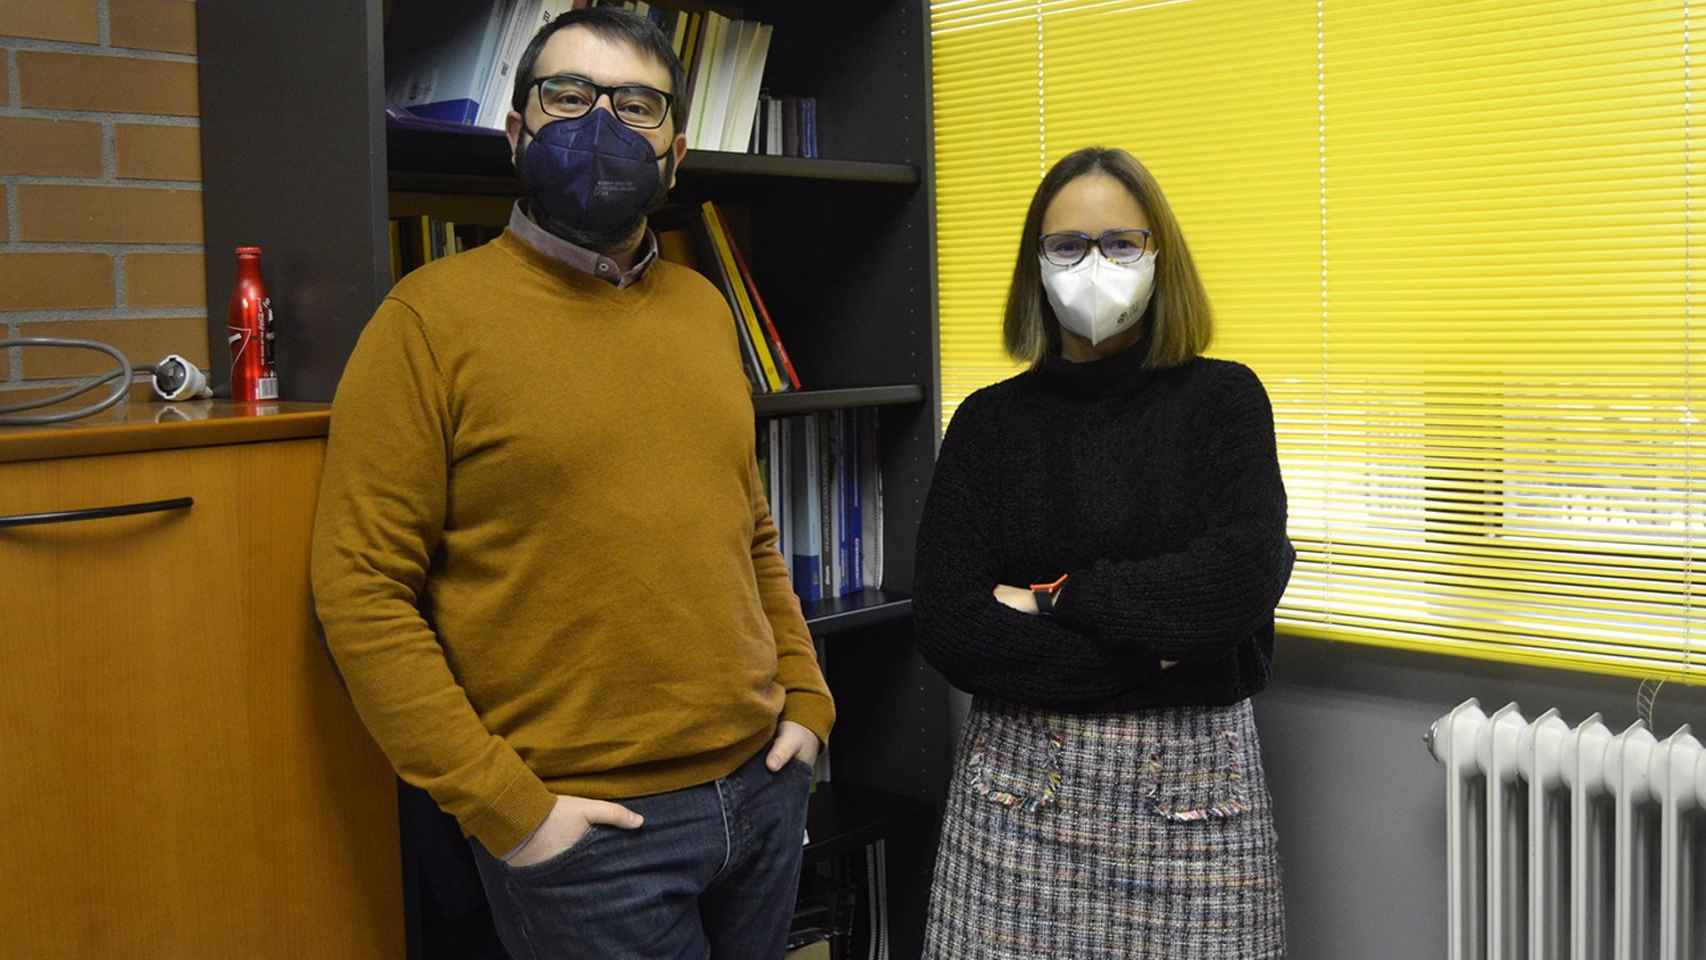 Los profesores Alberto Dafonte y Mabel Míguez, investigadores principales del proyecto ‘Narrativas digitales contra la desinformación’.